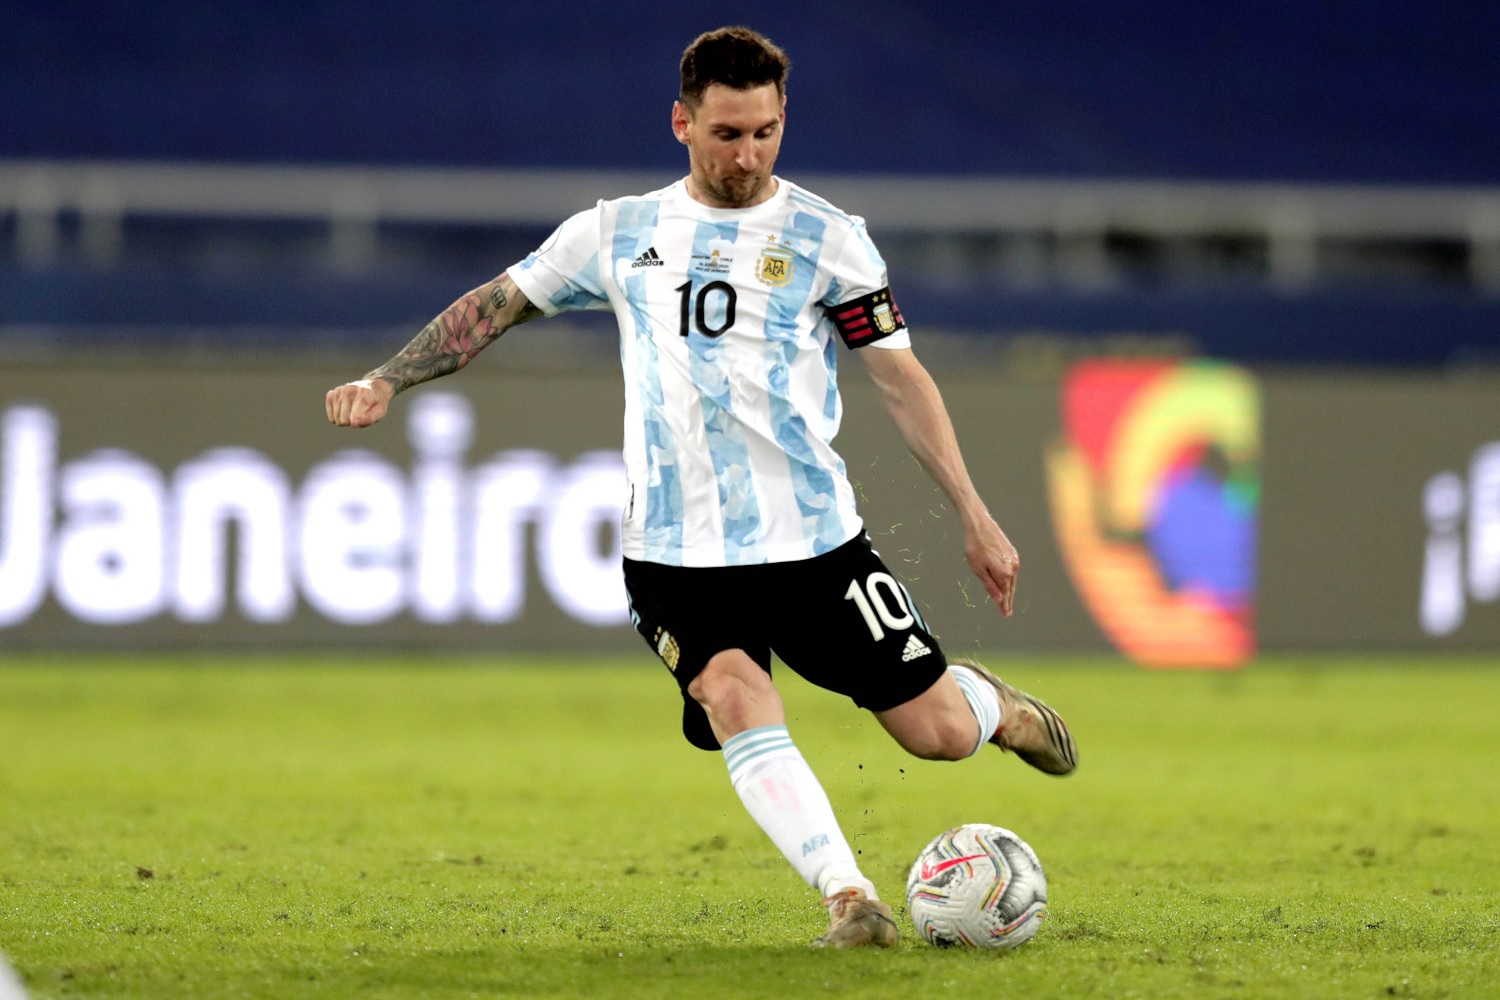 Asentar La Iglesia despreciar El detalle en los botines de Messi que preocupa a Adidas - Mendoza Post